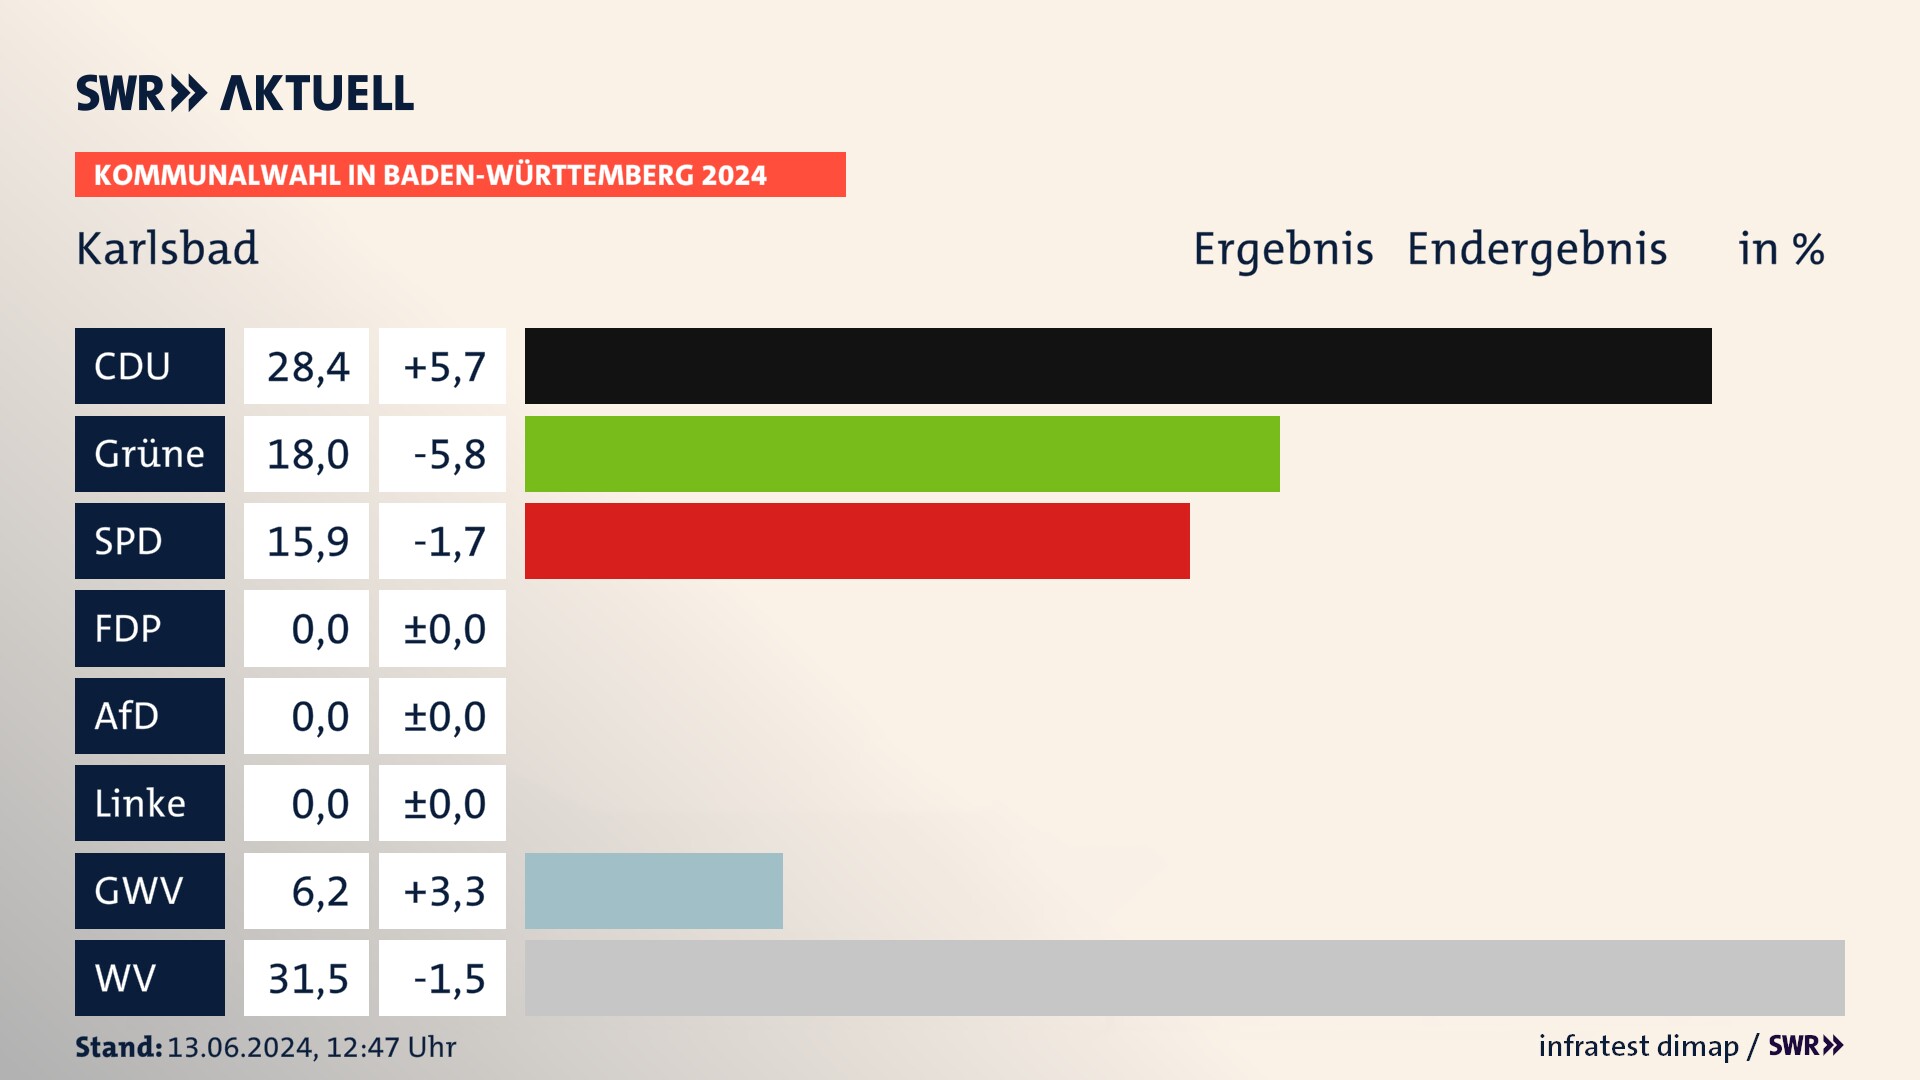 Kommunalwahl 2024 Endergebnis Zweitstimme für Karlsbad. In Karlsbad erzielt die CDU 28,4 Prozent der gültigen  Stimmen. Die Grünen landen bei 18,0 Prozent. Die SPD erreicht 15,9 Prozent. Die Gemeinsame Wahlvorschläge kommen auf 6,2 Prozent. Die Wählervereinigungen landen bei 31,5 Prozent.